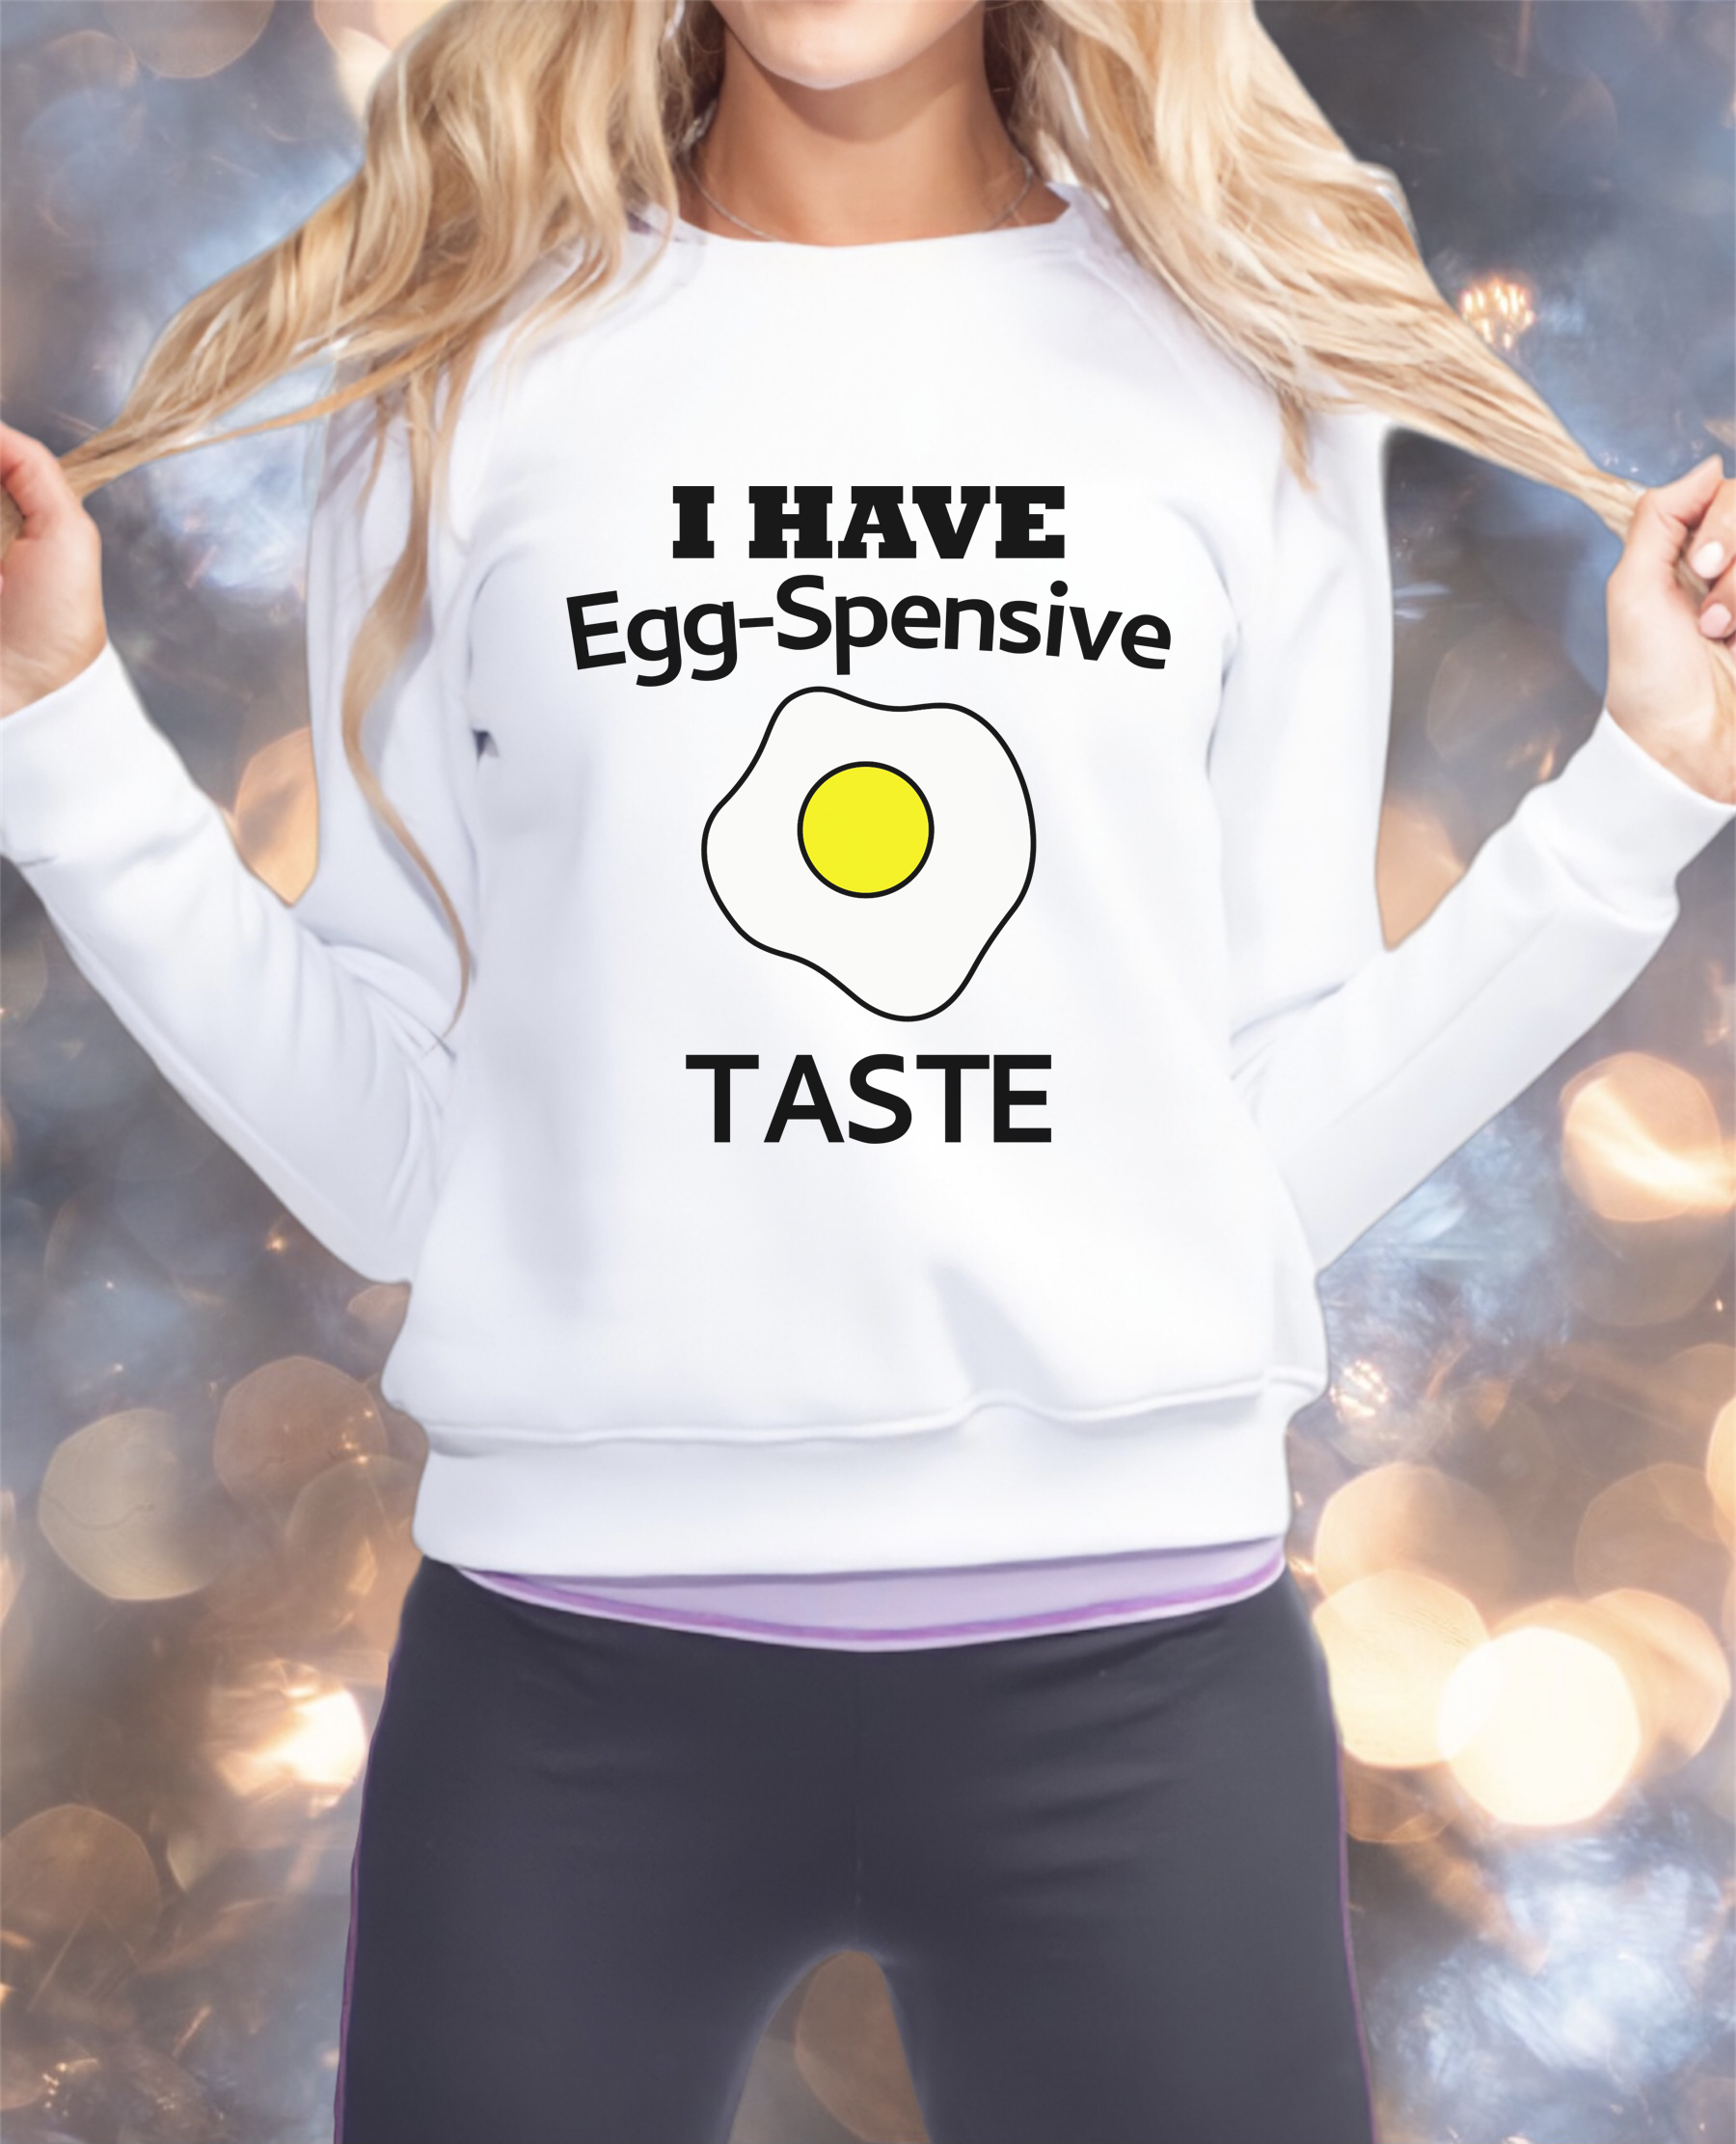 Free I have Egg-Spensive Taste SVG File